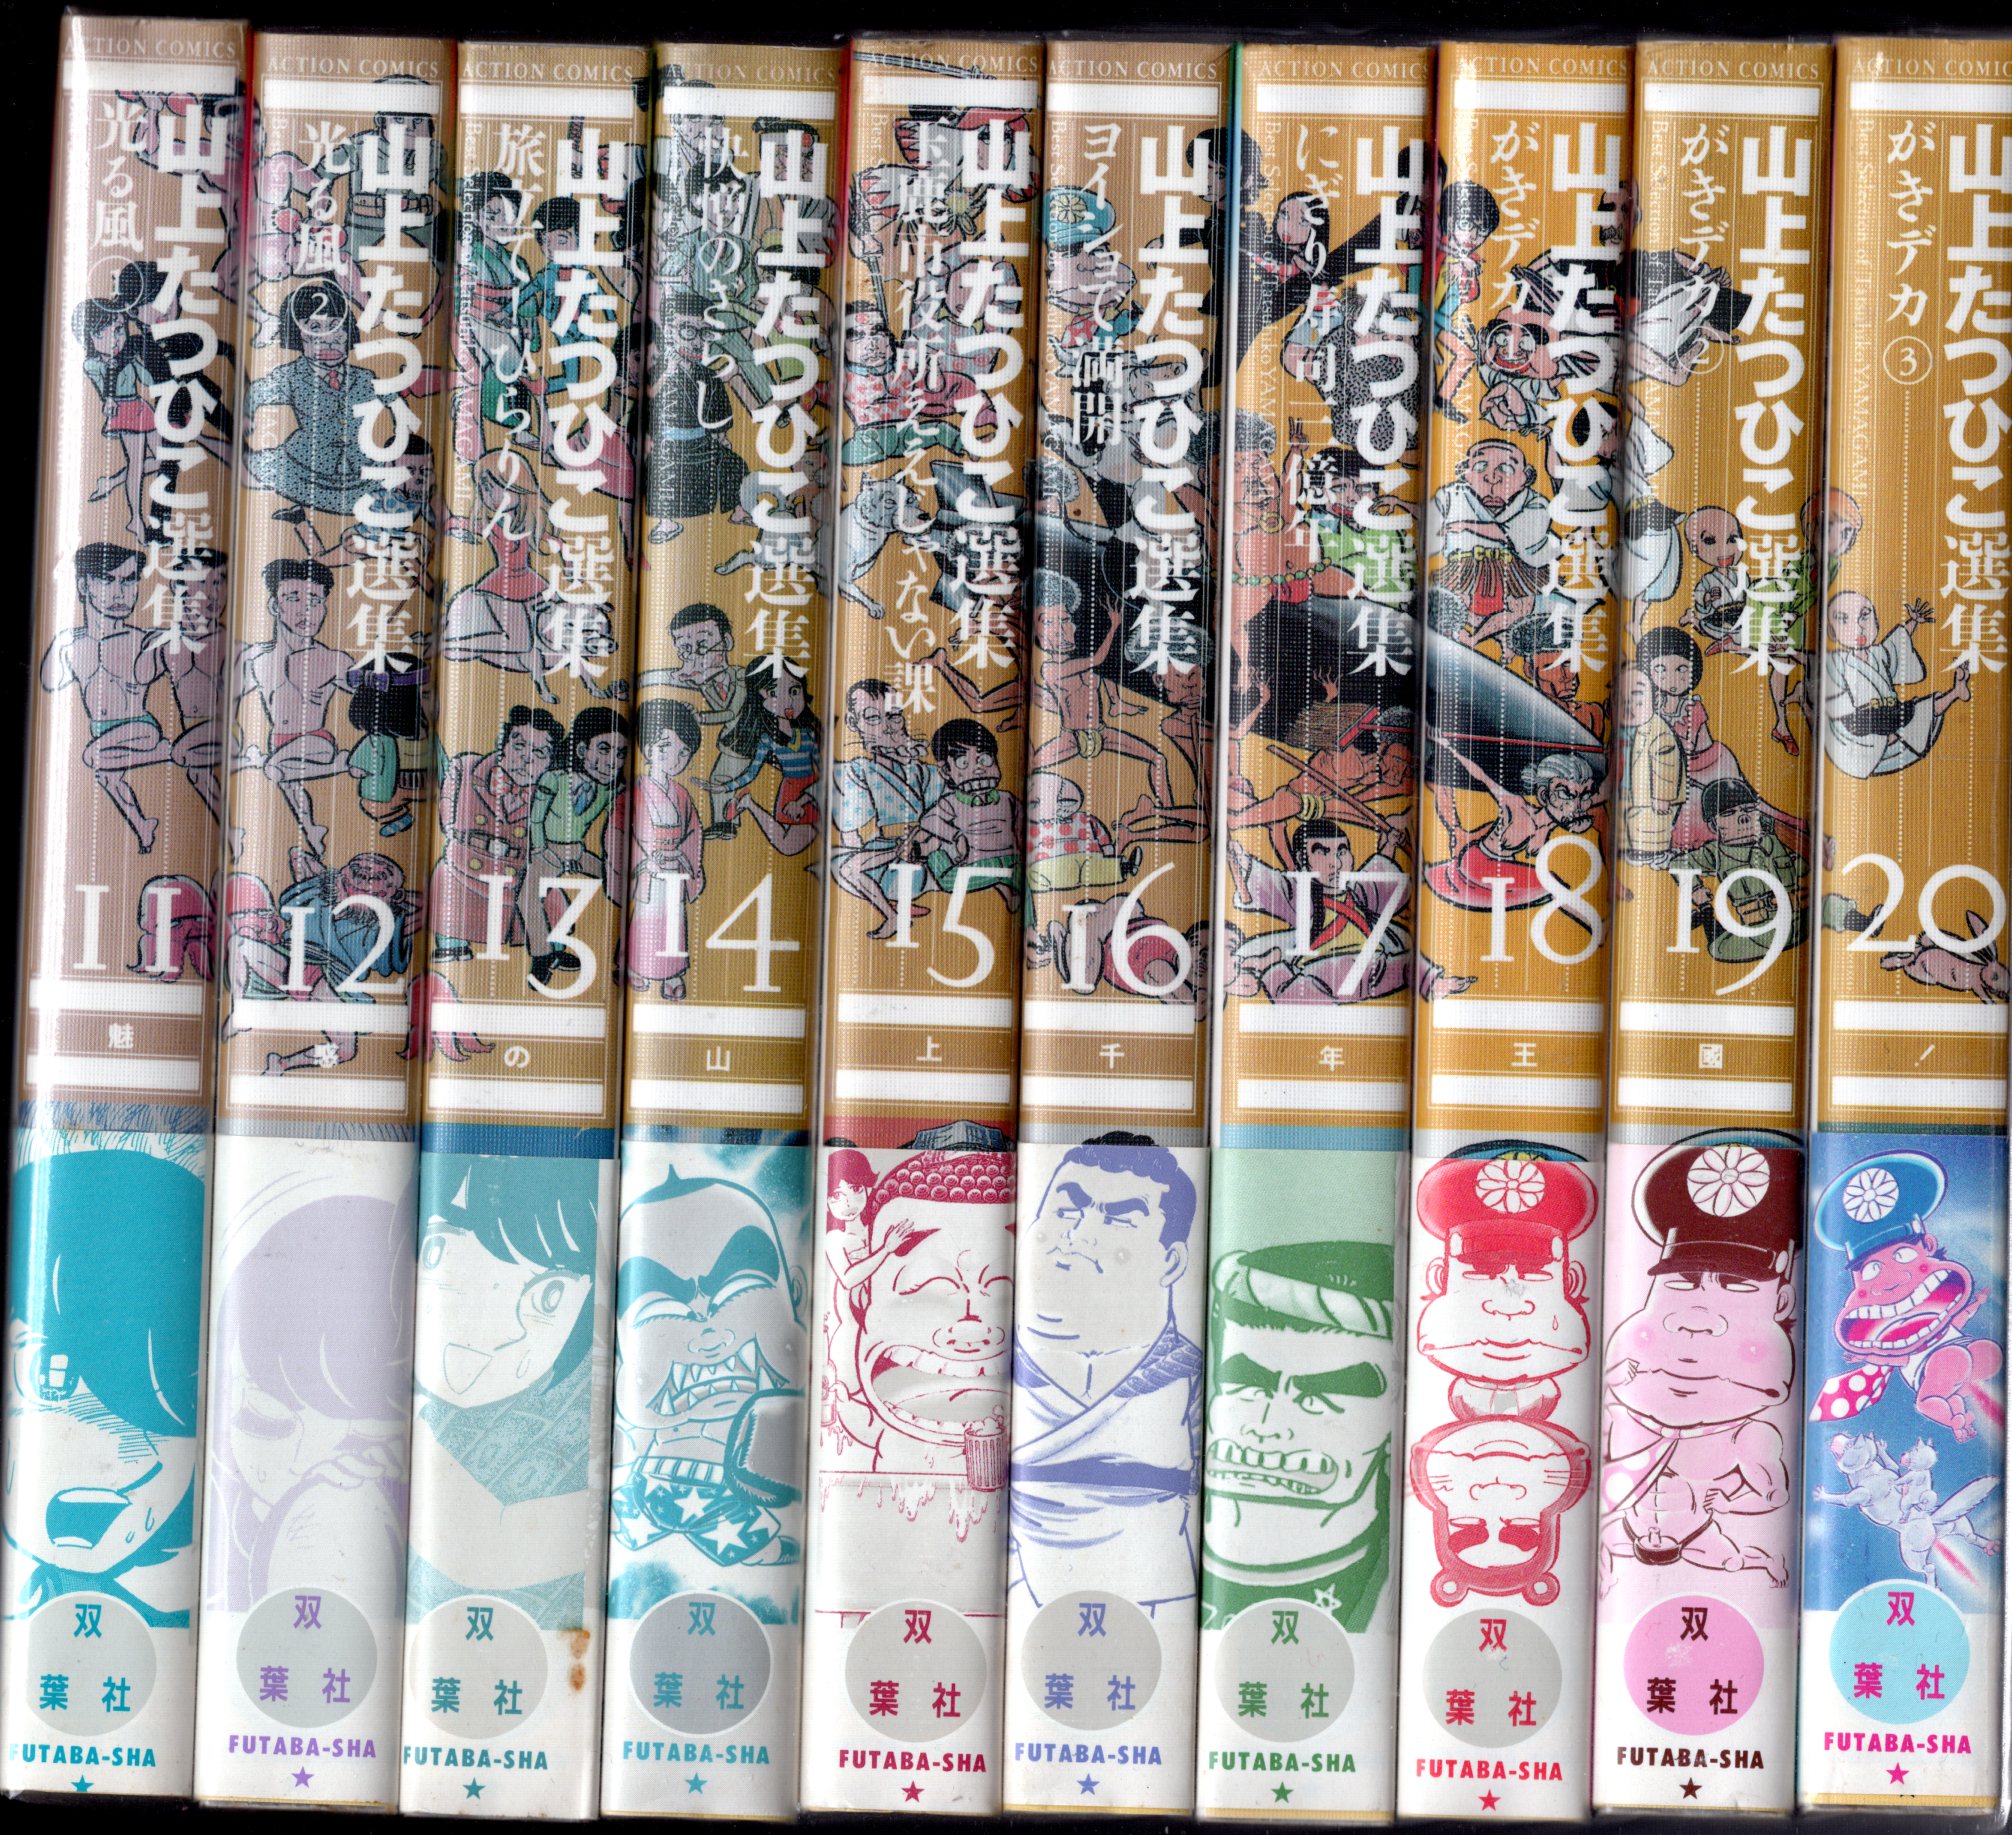 双葉社 アクションコミックス 山上たつひこ 山上たつひこ選集 全20巻